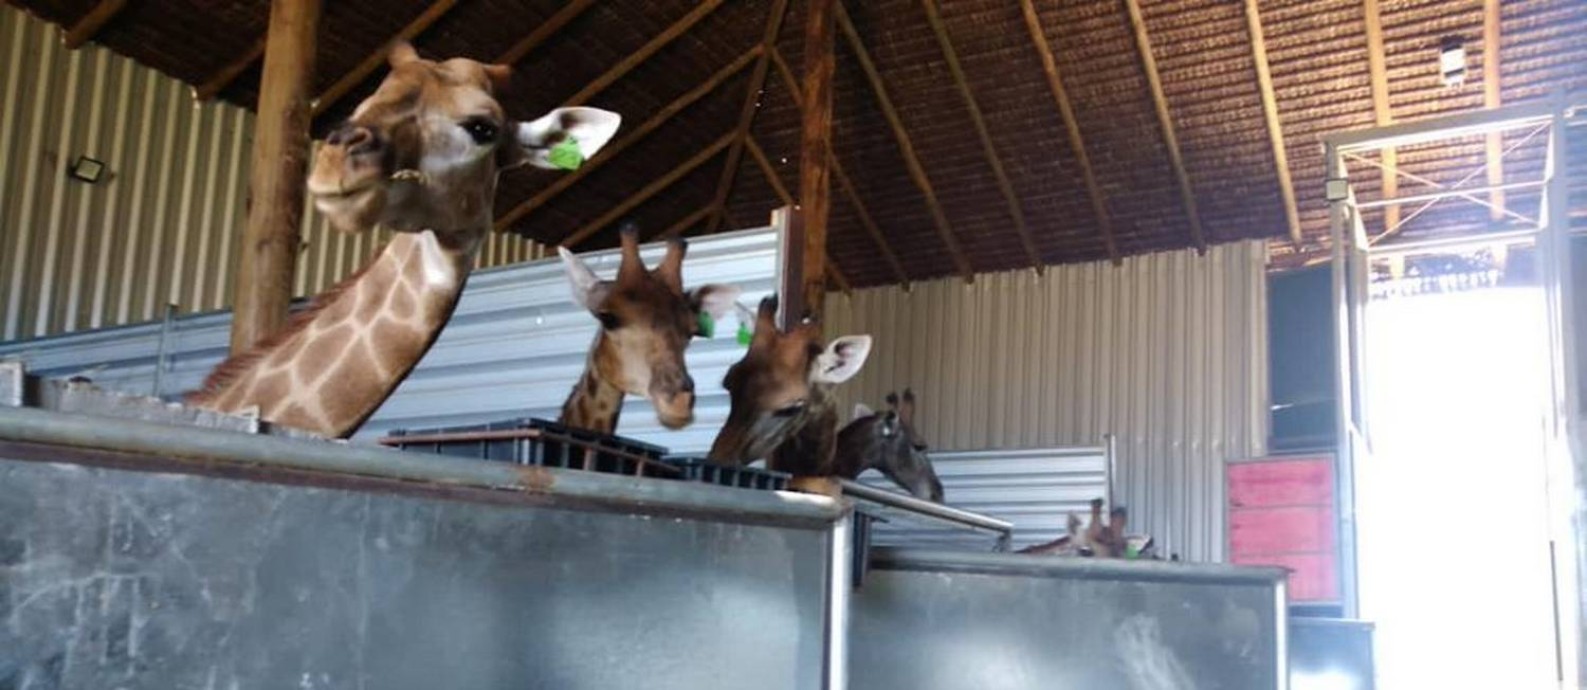 A PF prendeu dois homens por maus-tratos e apreendeu 15 (quinze) girafas em um resort safari, em Mangaratiba, litoral sul do Rio de Janeiro Foto: Divulgação